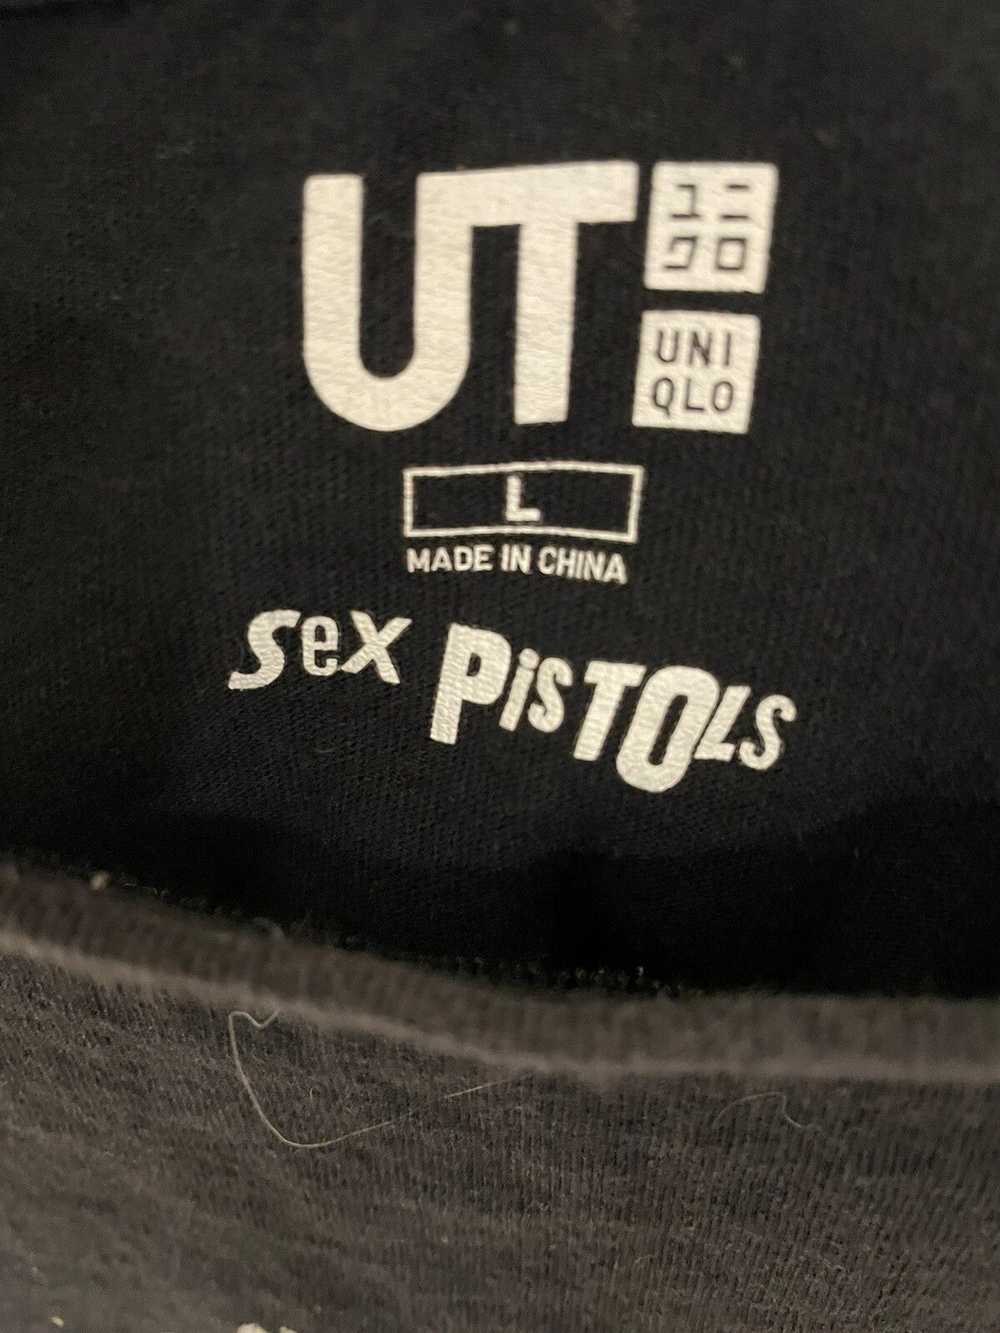 Band Tees × Uniqlo Sex Pistols x Uniqlo (2017) - image 3